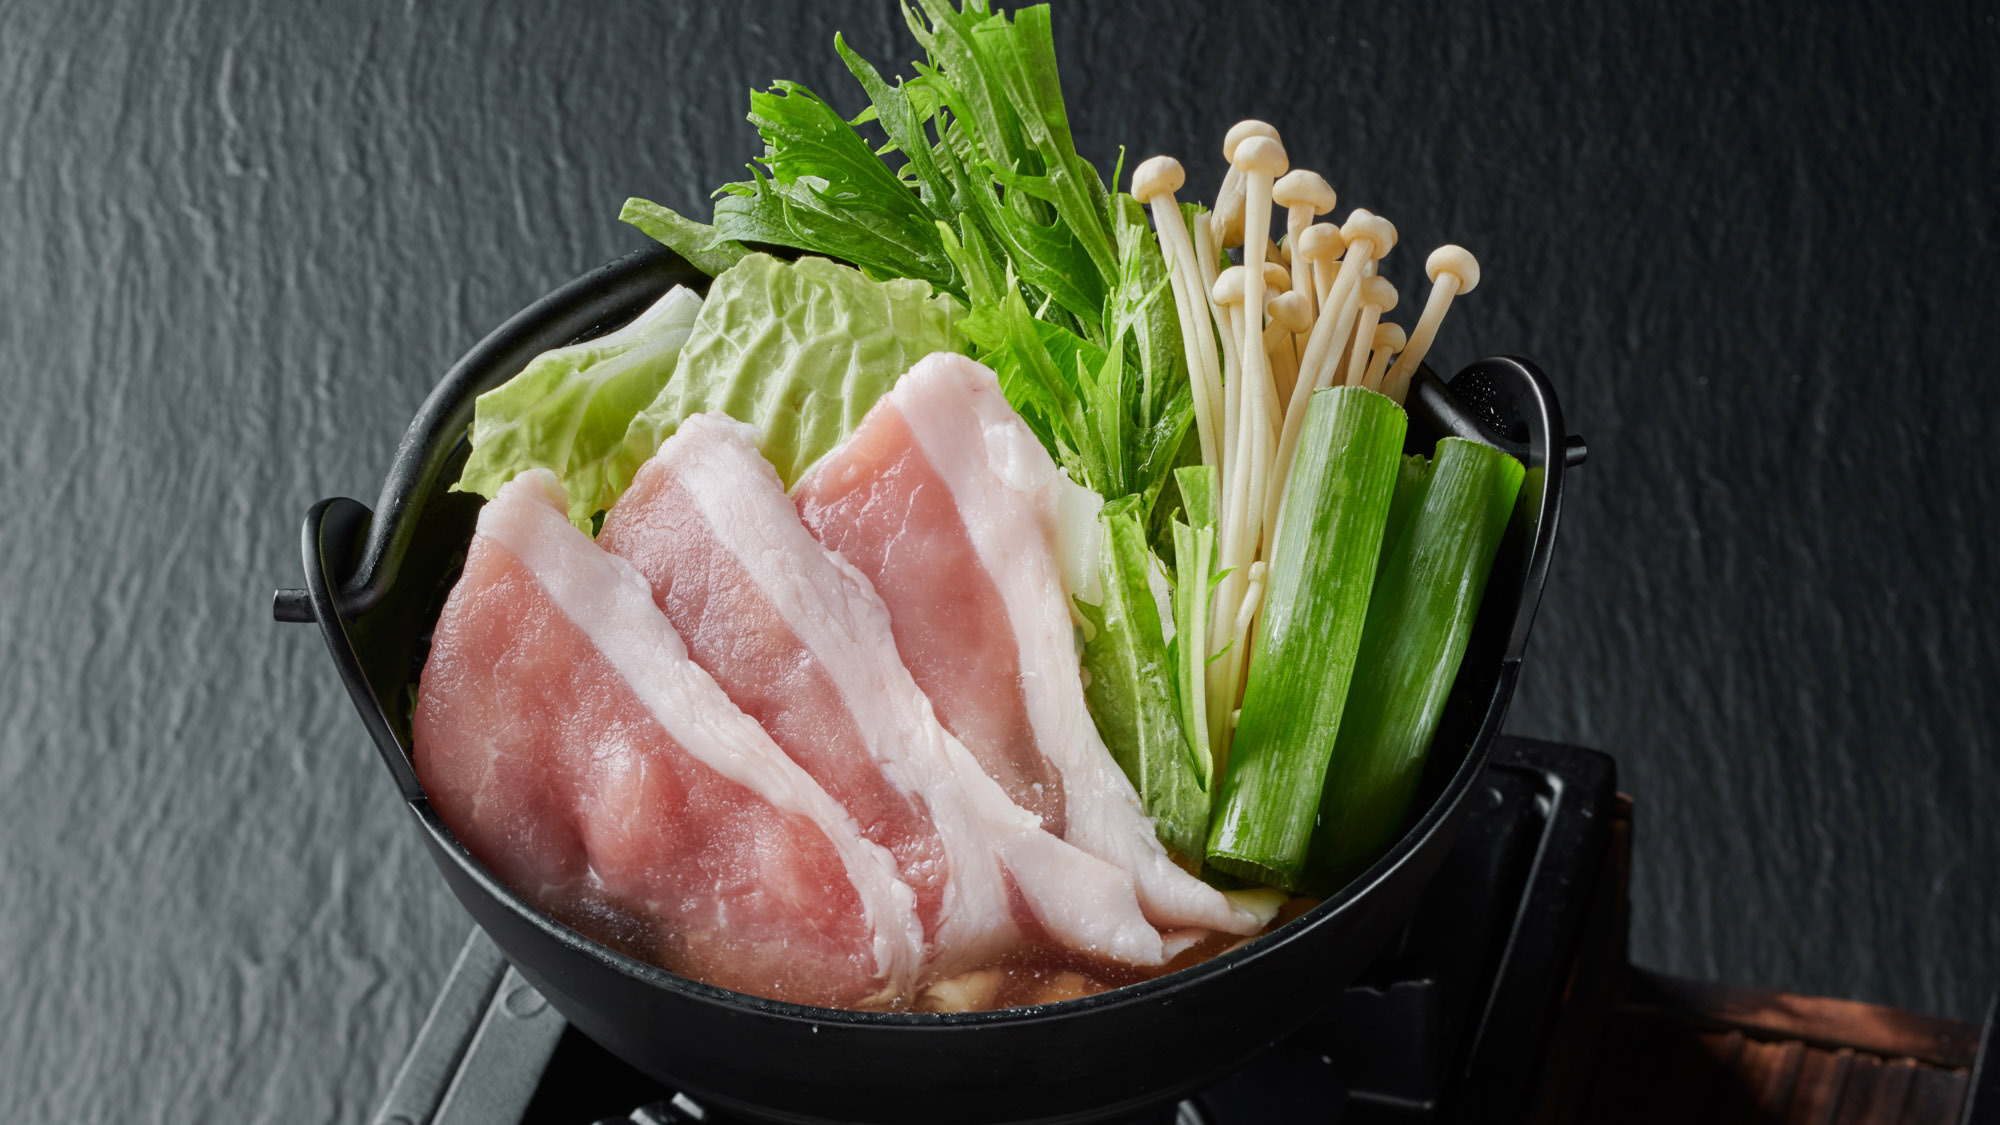 ・【お料理】新鮮なお肉とたっぷりのお野菜の小鍋は卓上コンロにのせてお出しします